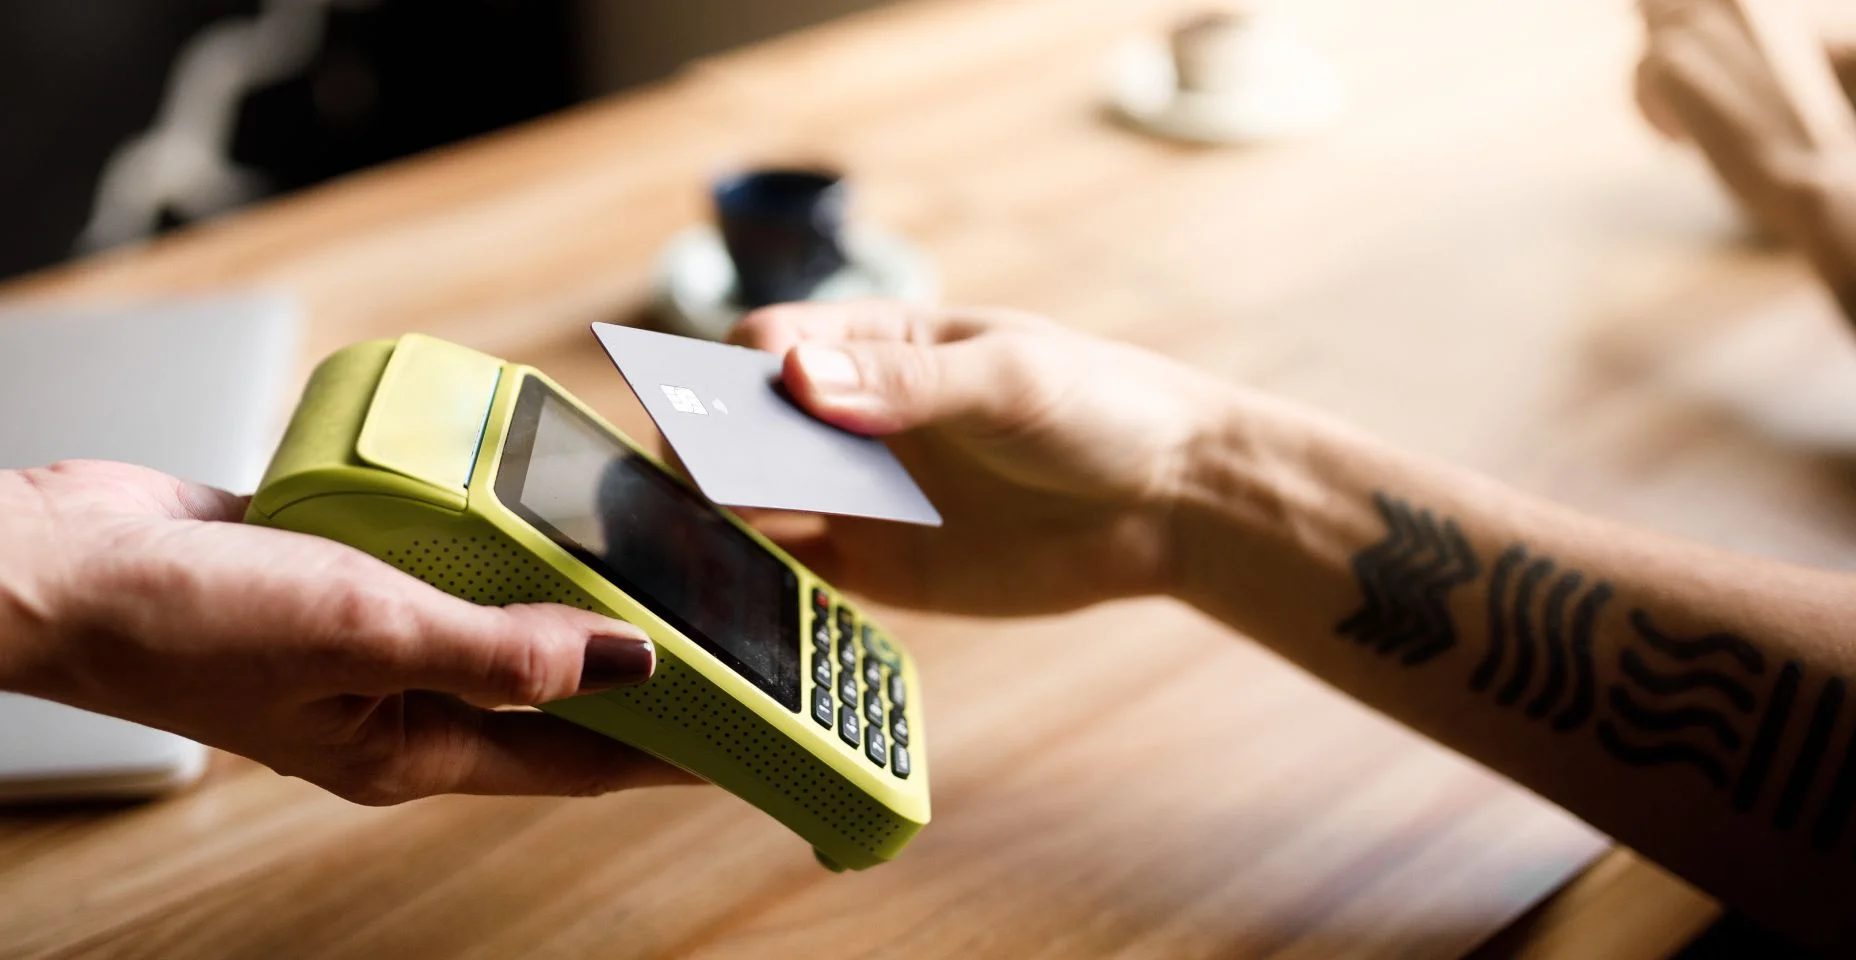 Pagando a conta com cartão de crédito sem contato